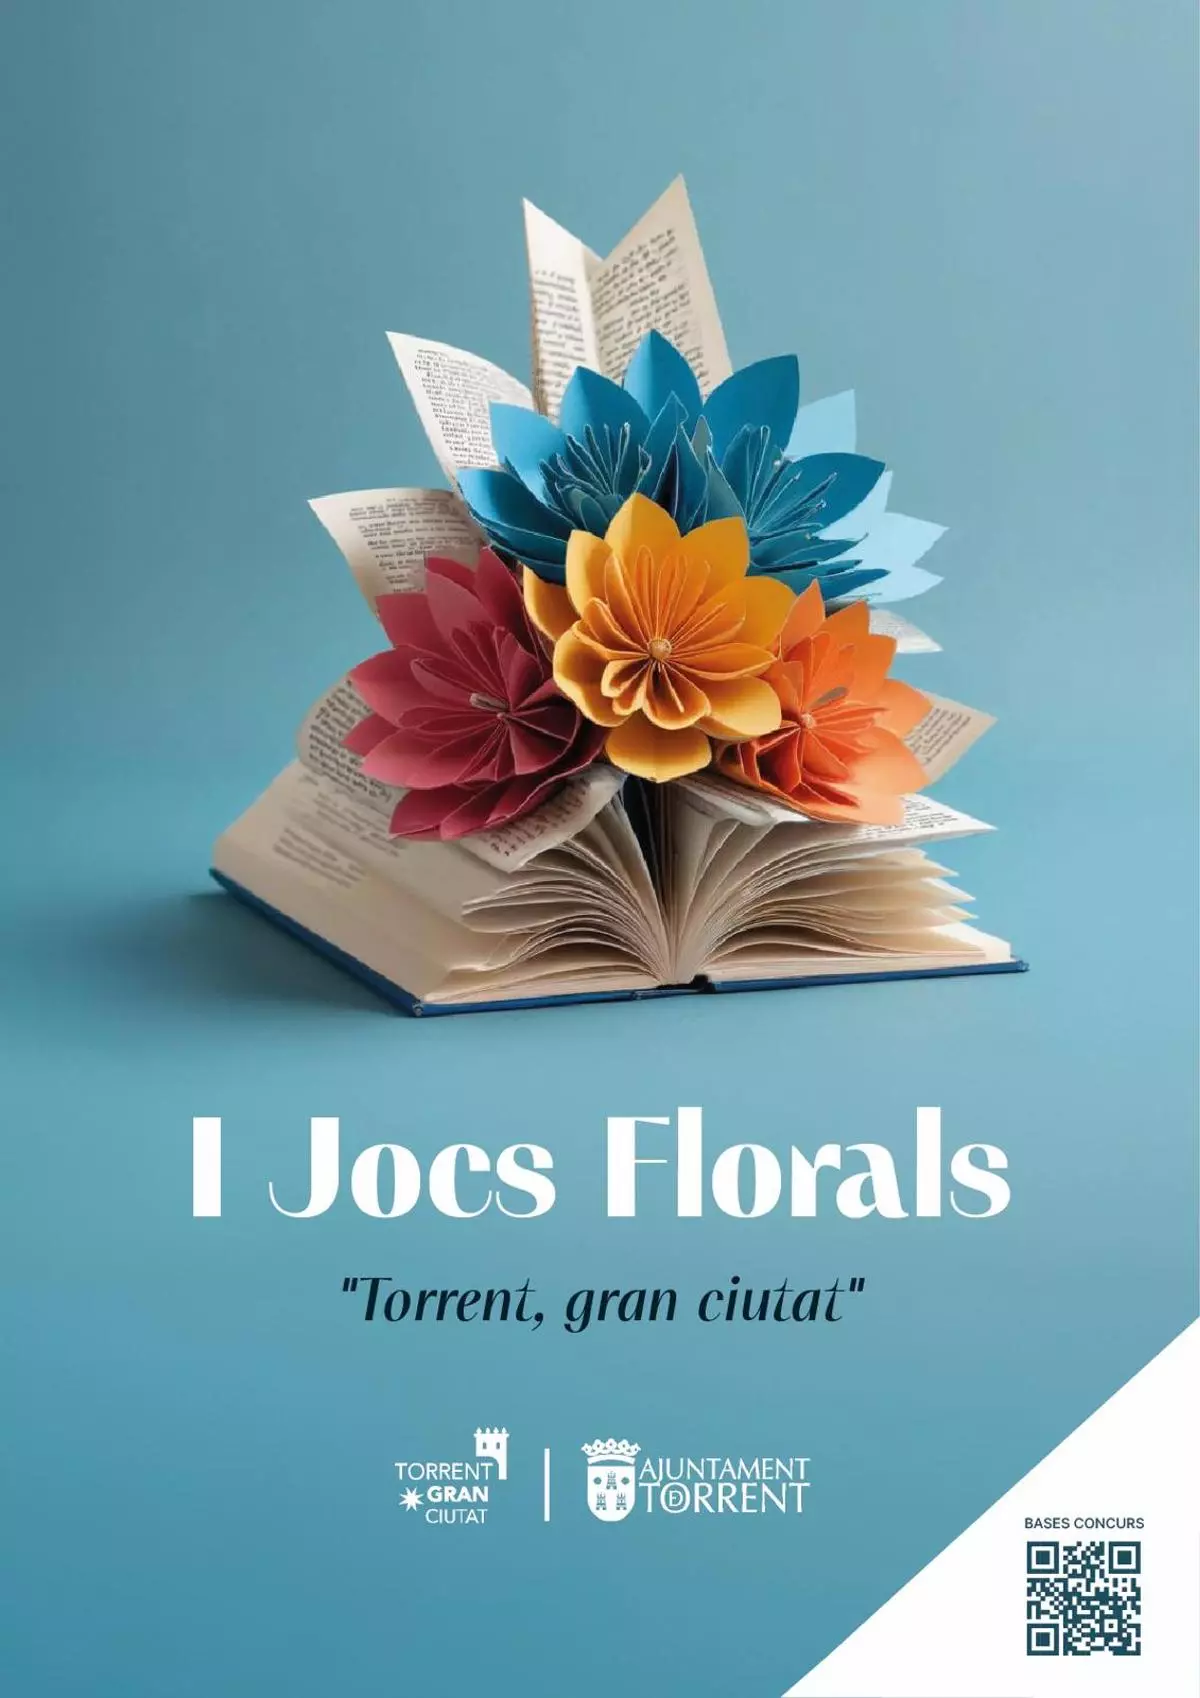 Torrent impulsa los "Jocs florals" para fomentar la creación literaria en valenciano